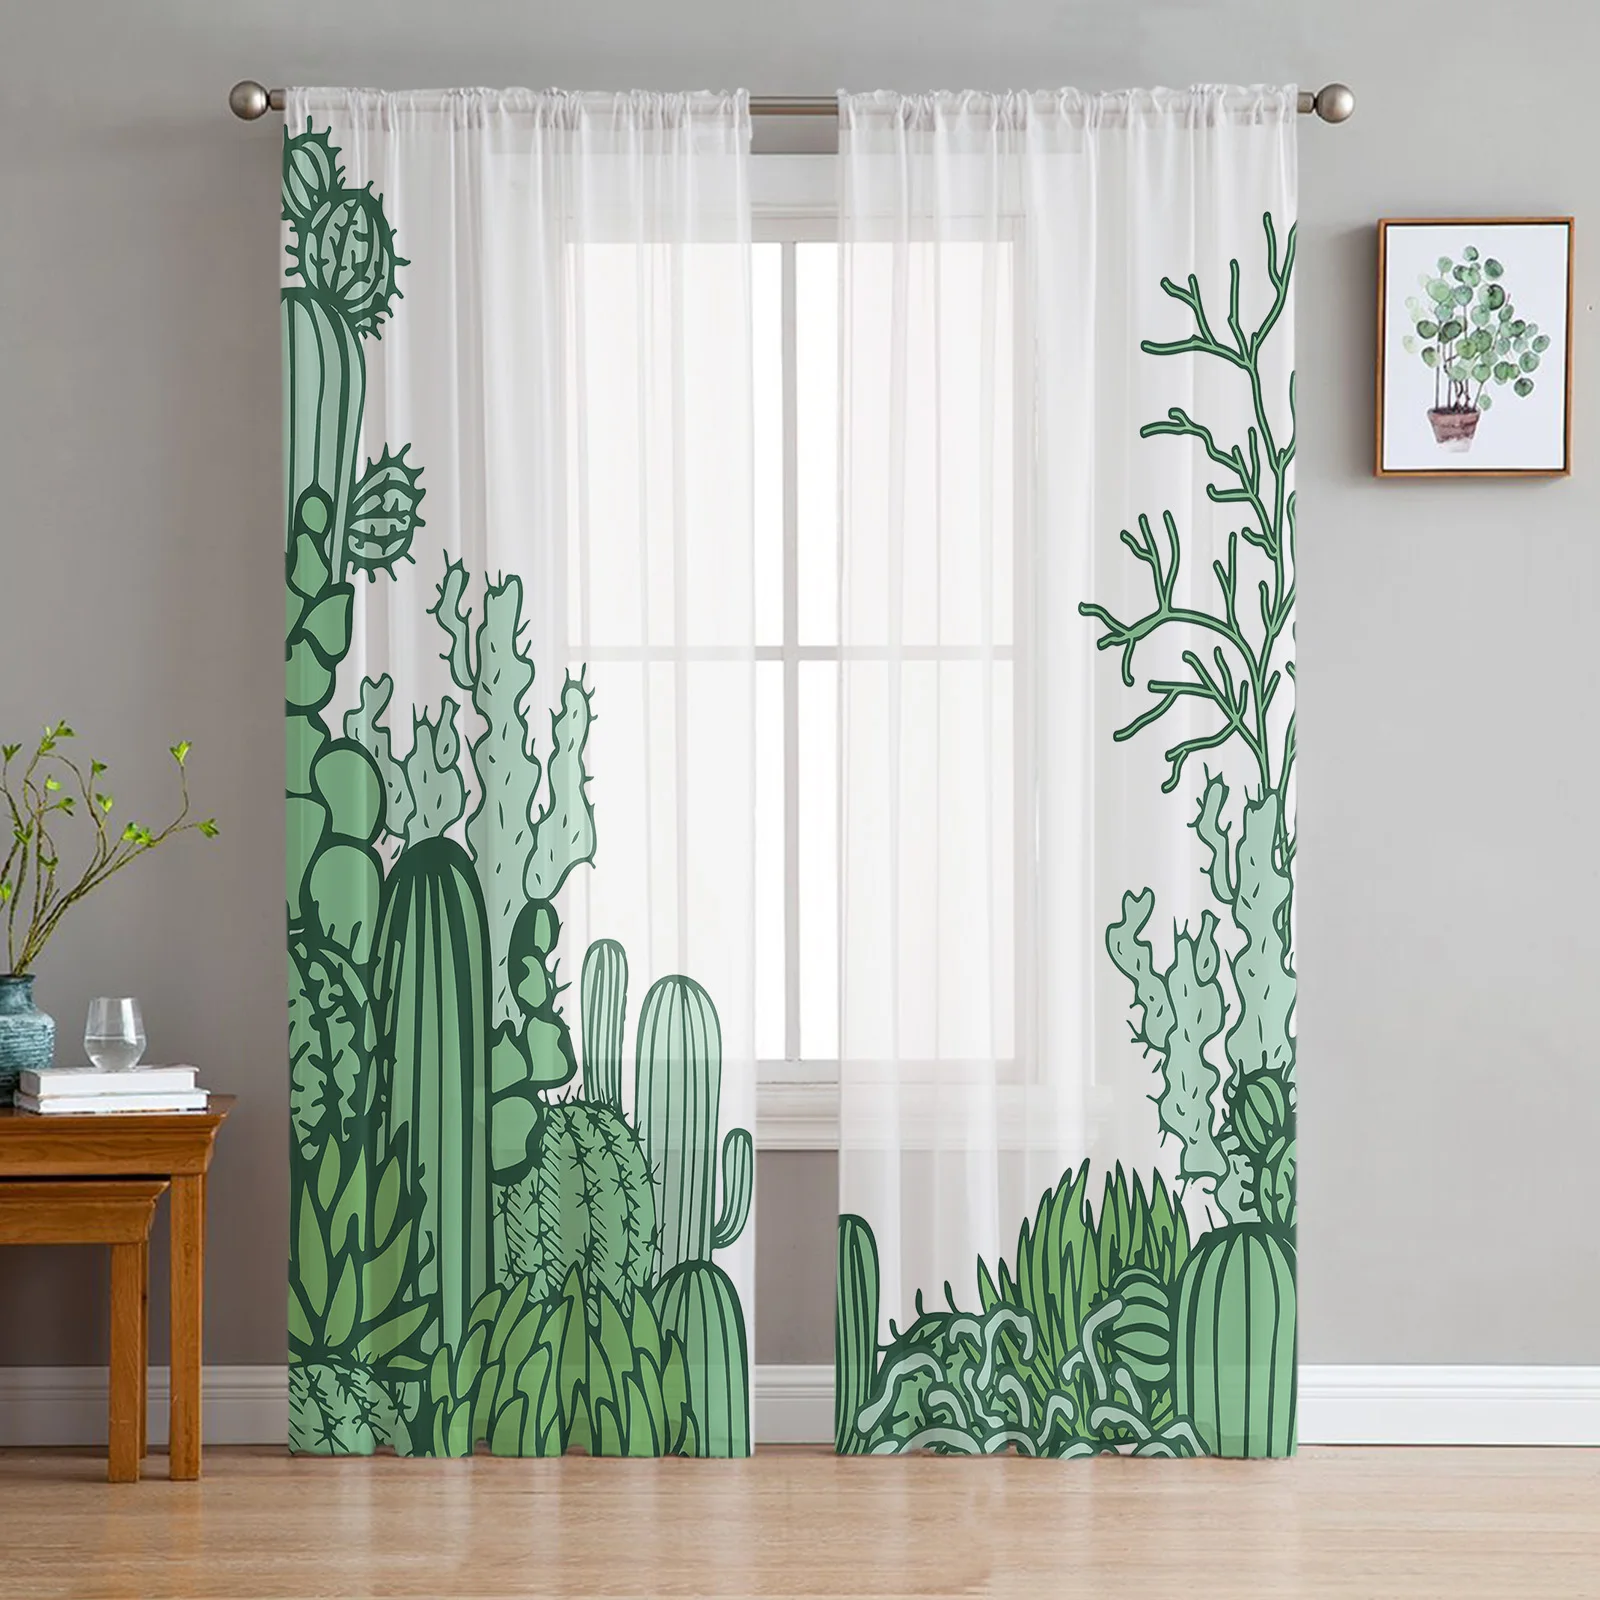 

Скандинавские прозрачные Занавески с кактусами и тропическими листьями, s для гостиной, вуаль, занавески для спальни, ванной, тюлевые занаве...